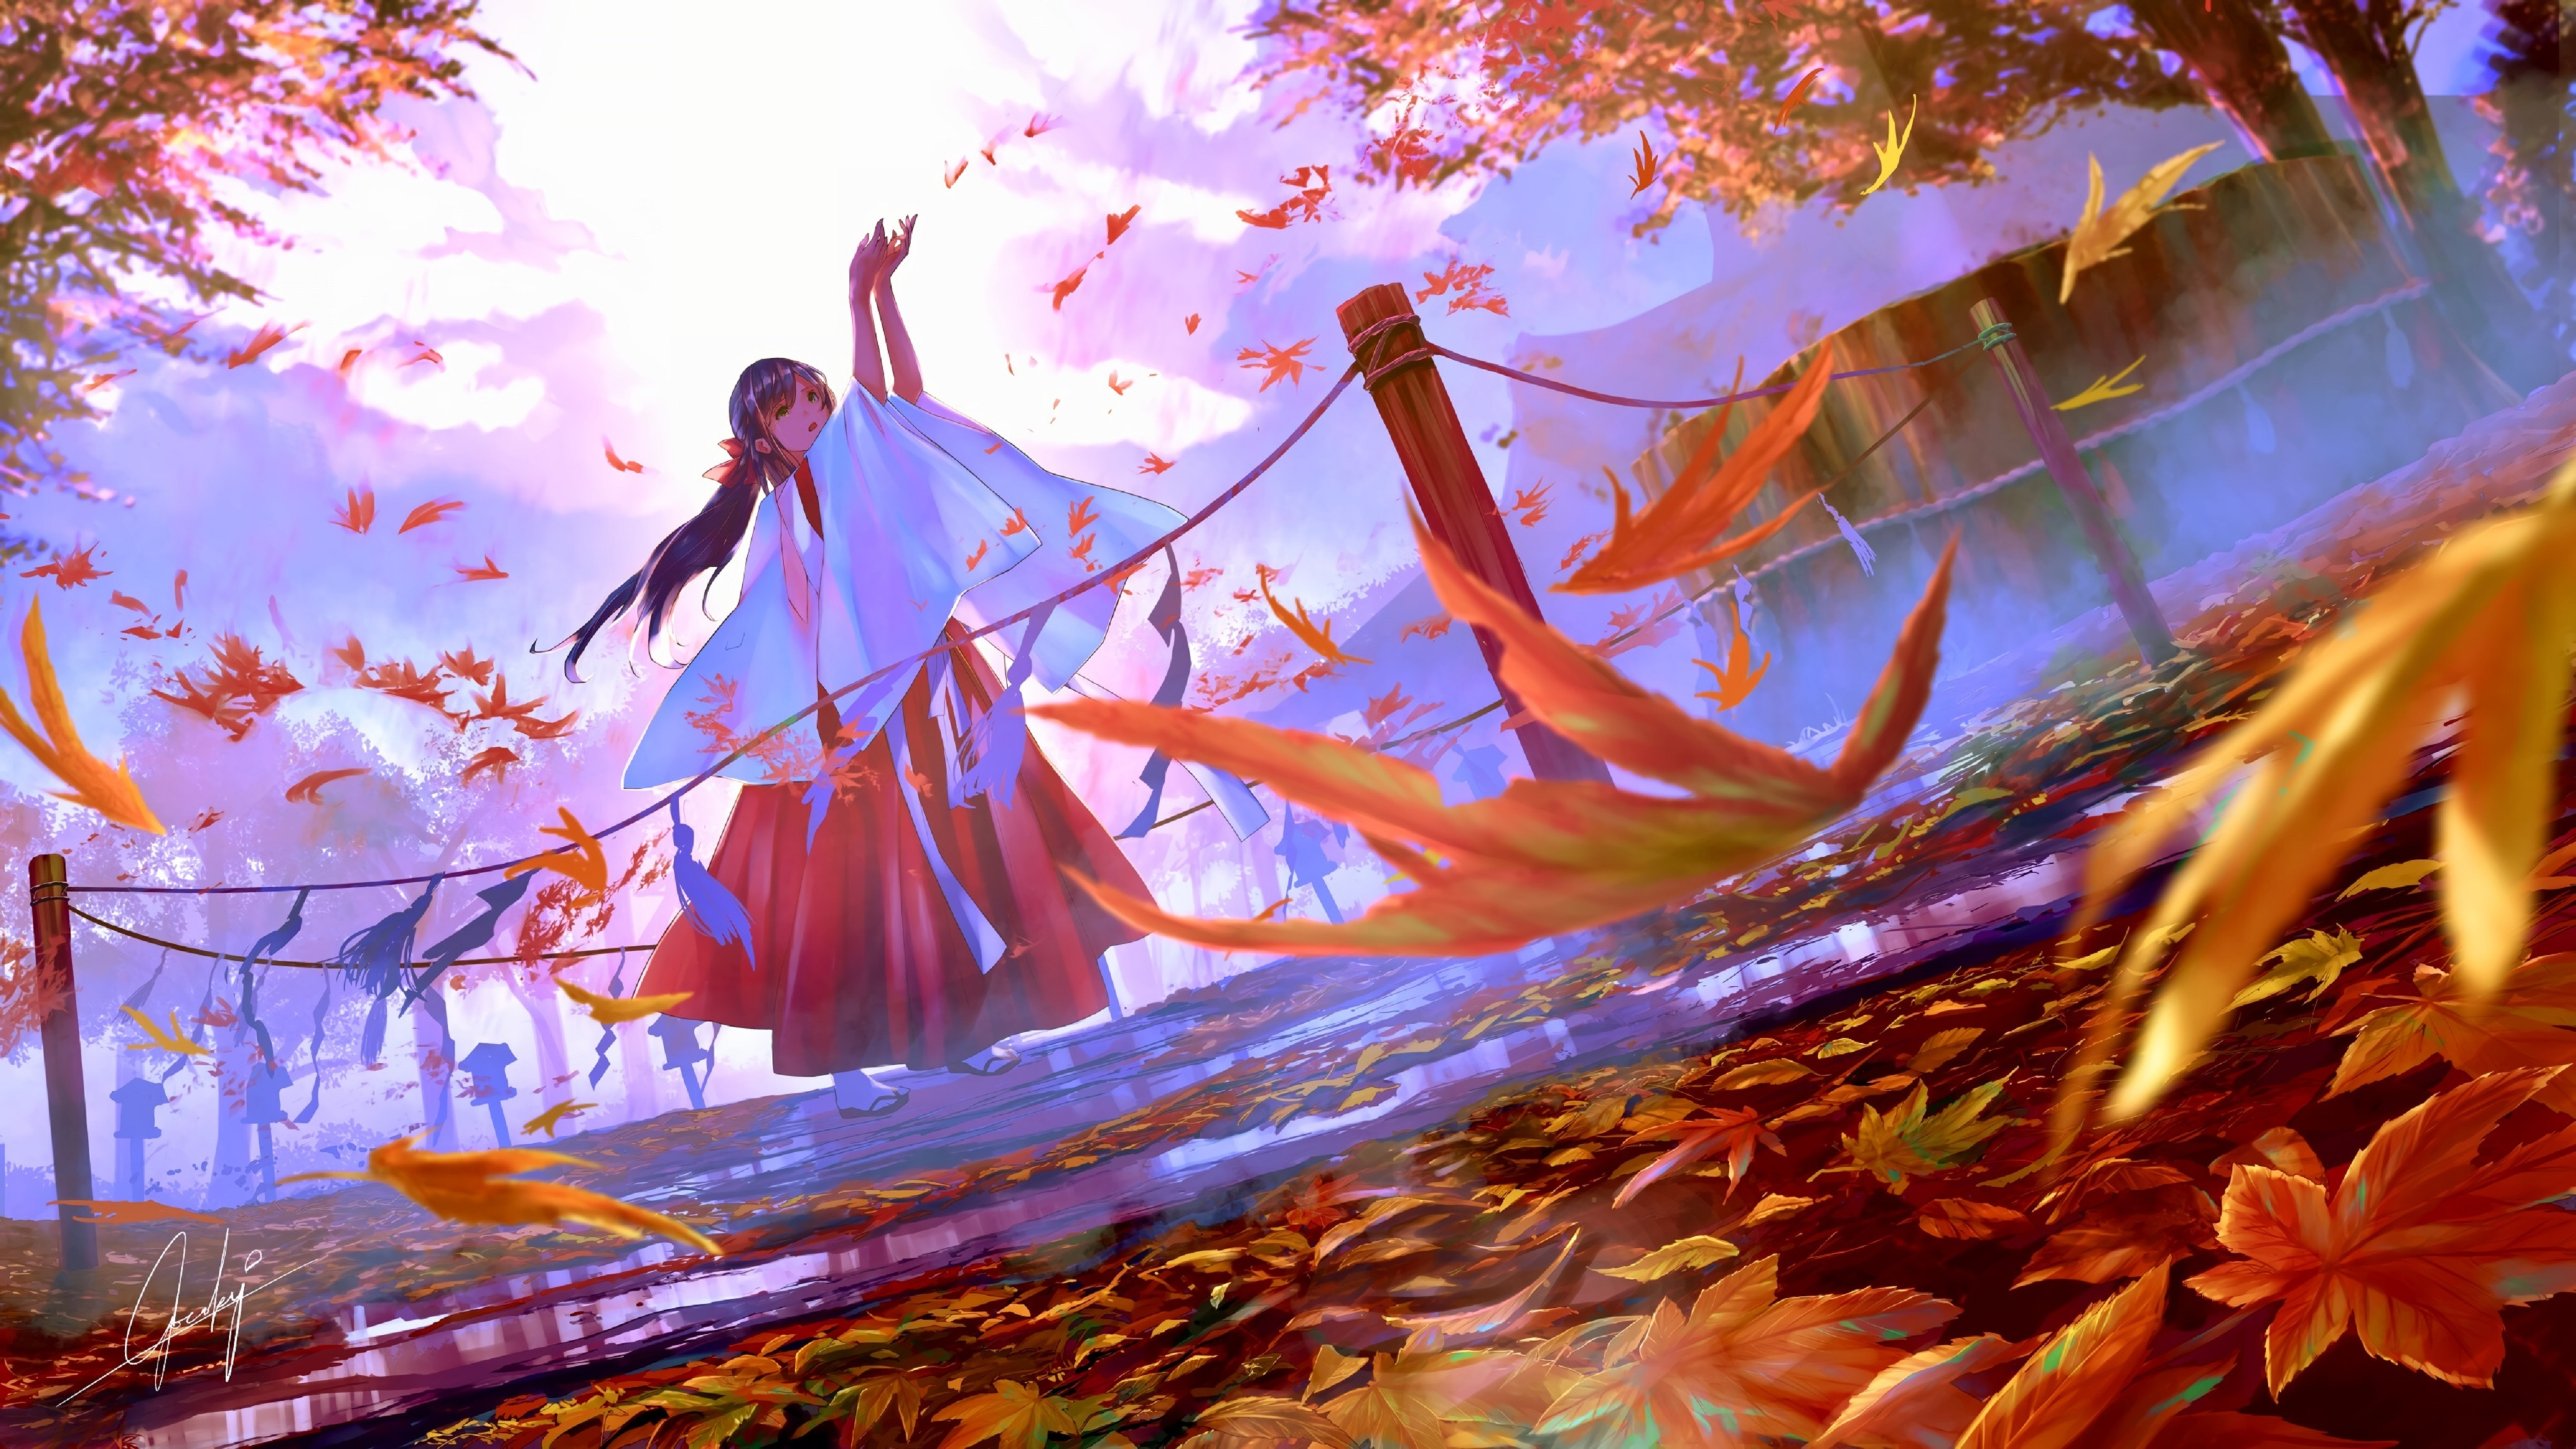 Фото осень, храм, аниме девушка, пейзаж, Wallpaper Miko, разное - бесплатные картинки на Fonwall